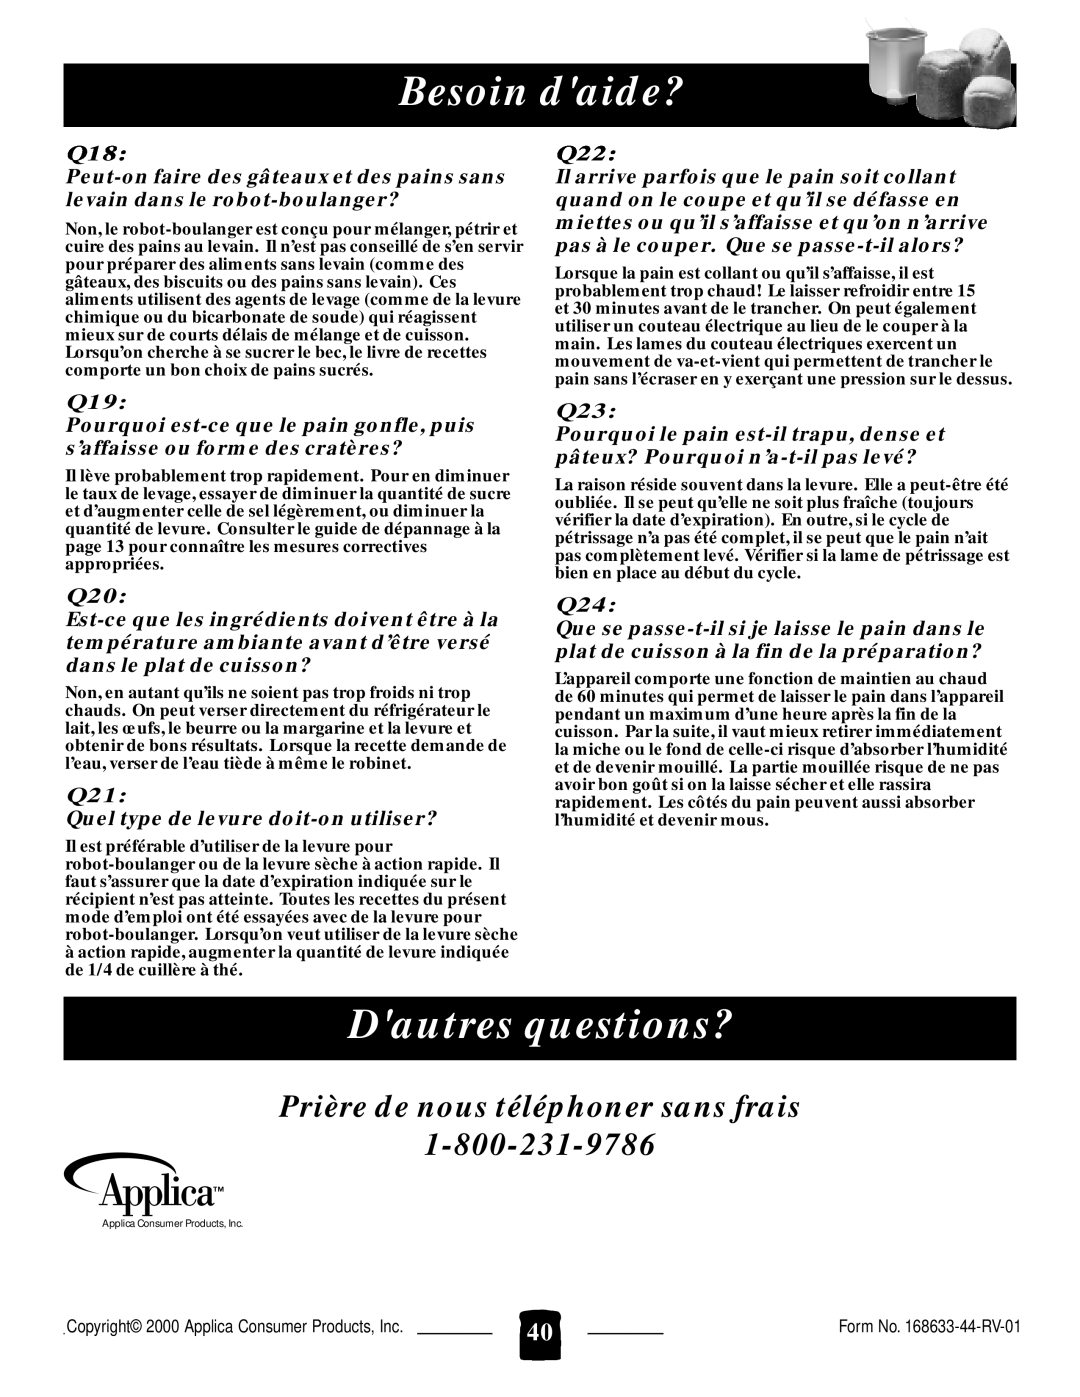 Black & Decker B1650 manual Dautres questions?, Prière de nous téléphoner sans frais, Besoin daide? 